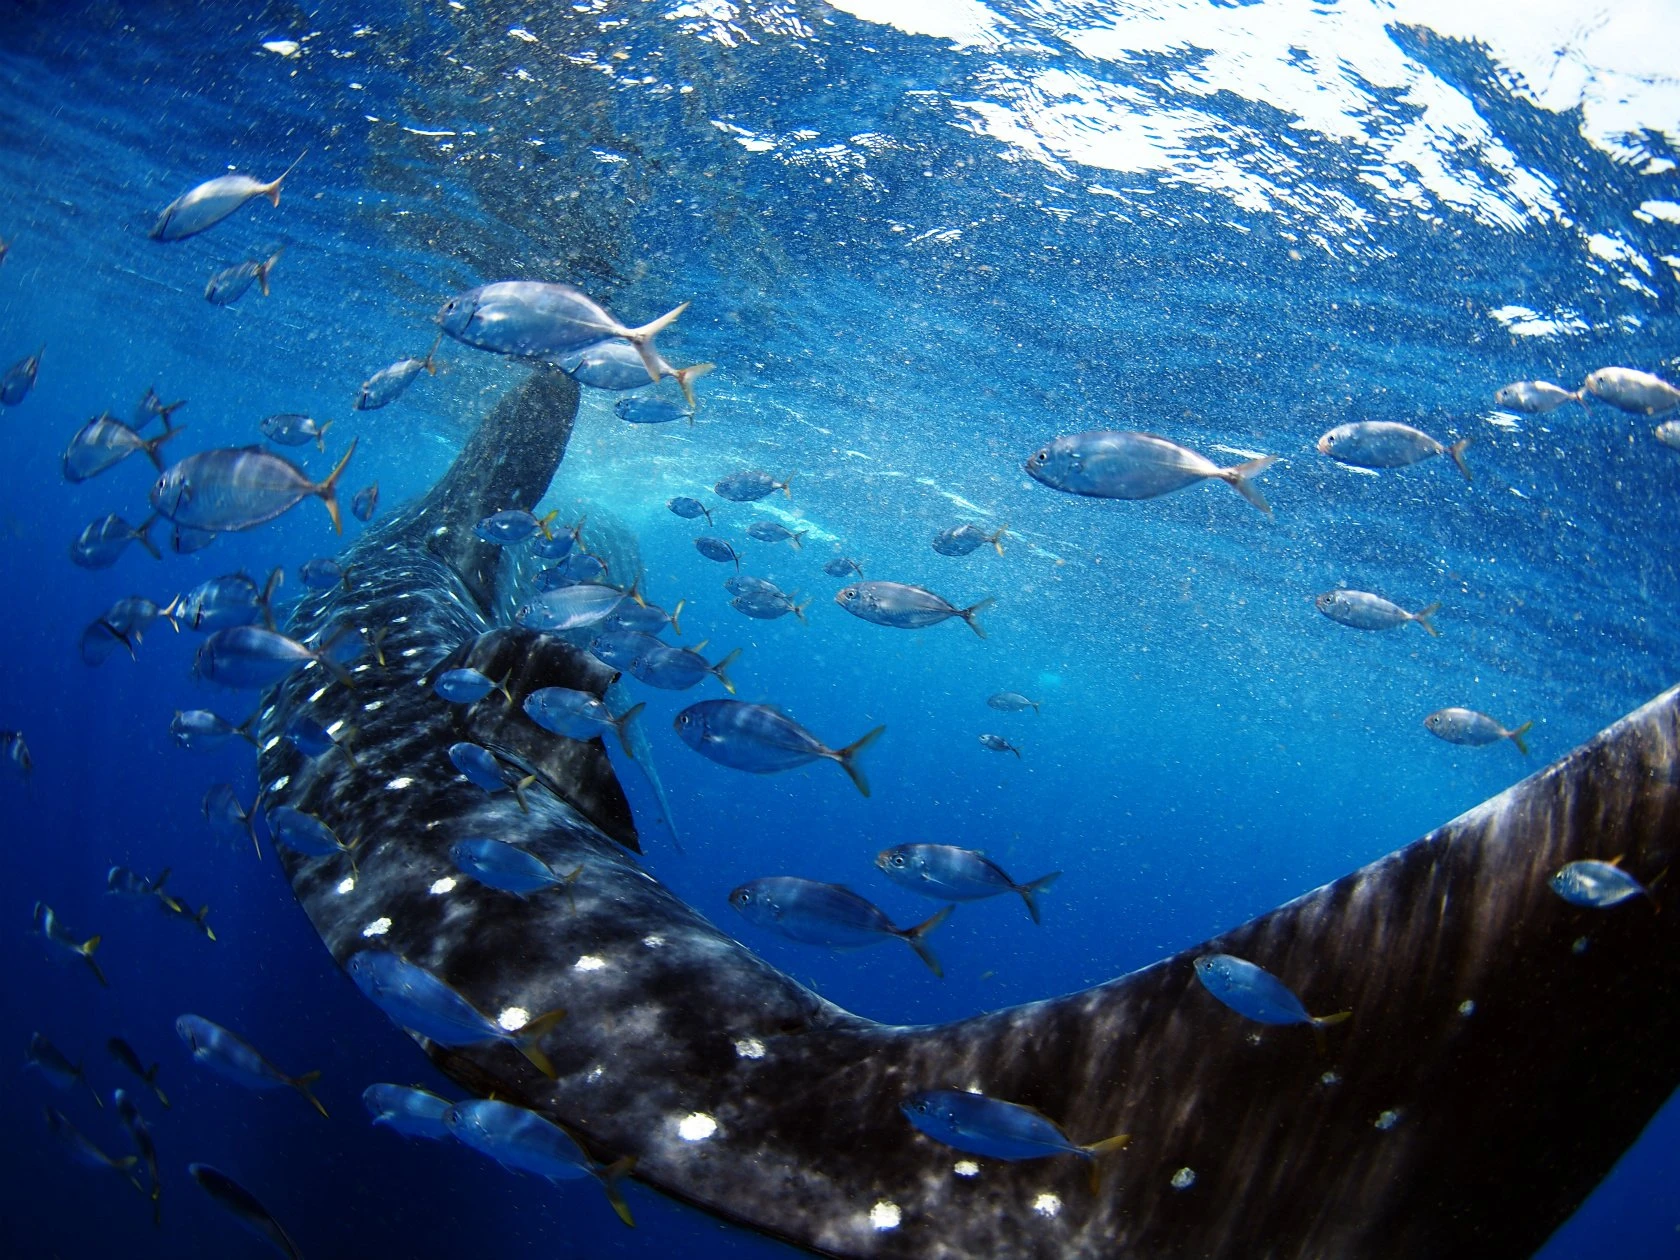 メキシコ・ユカタン半島沖のジンベエザメ